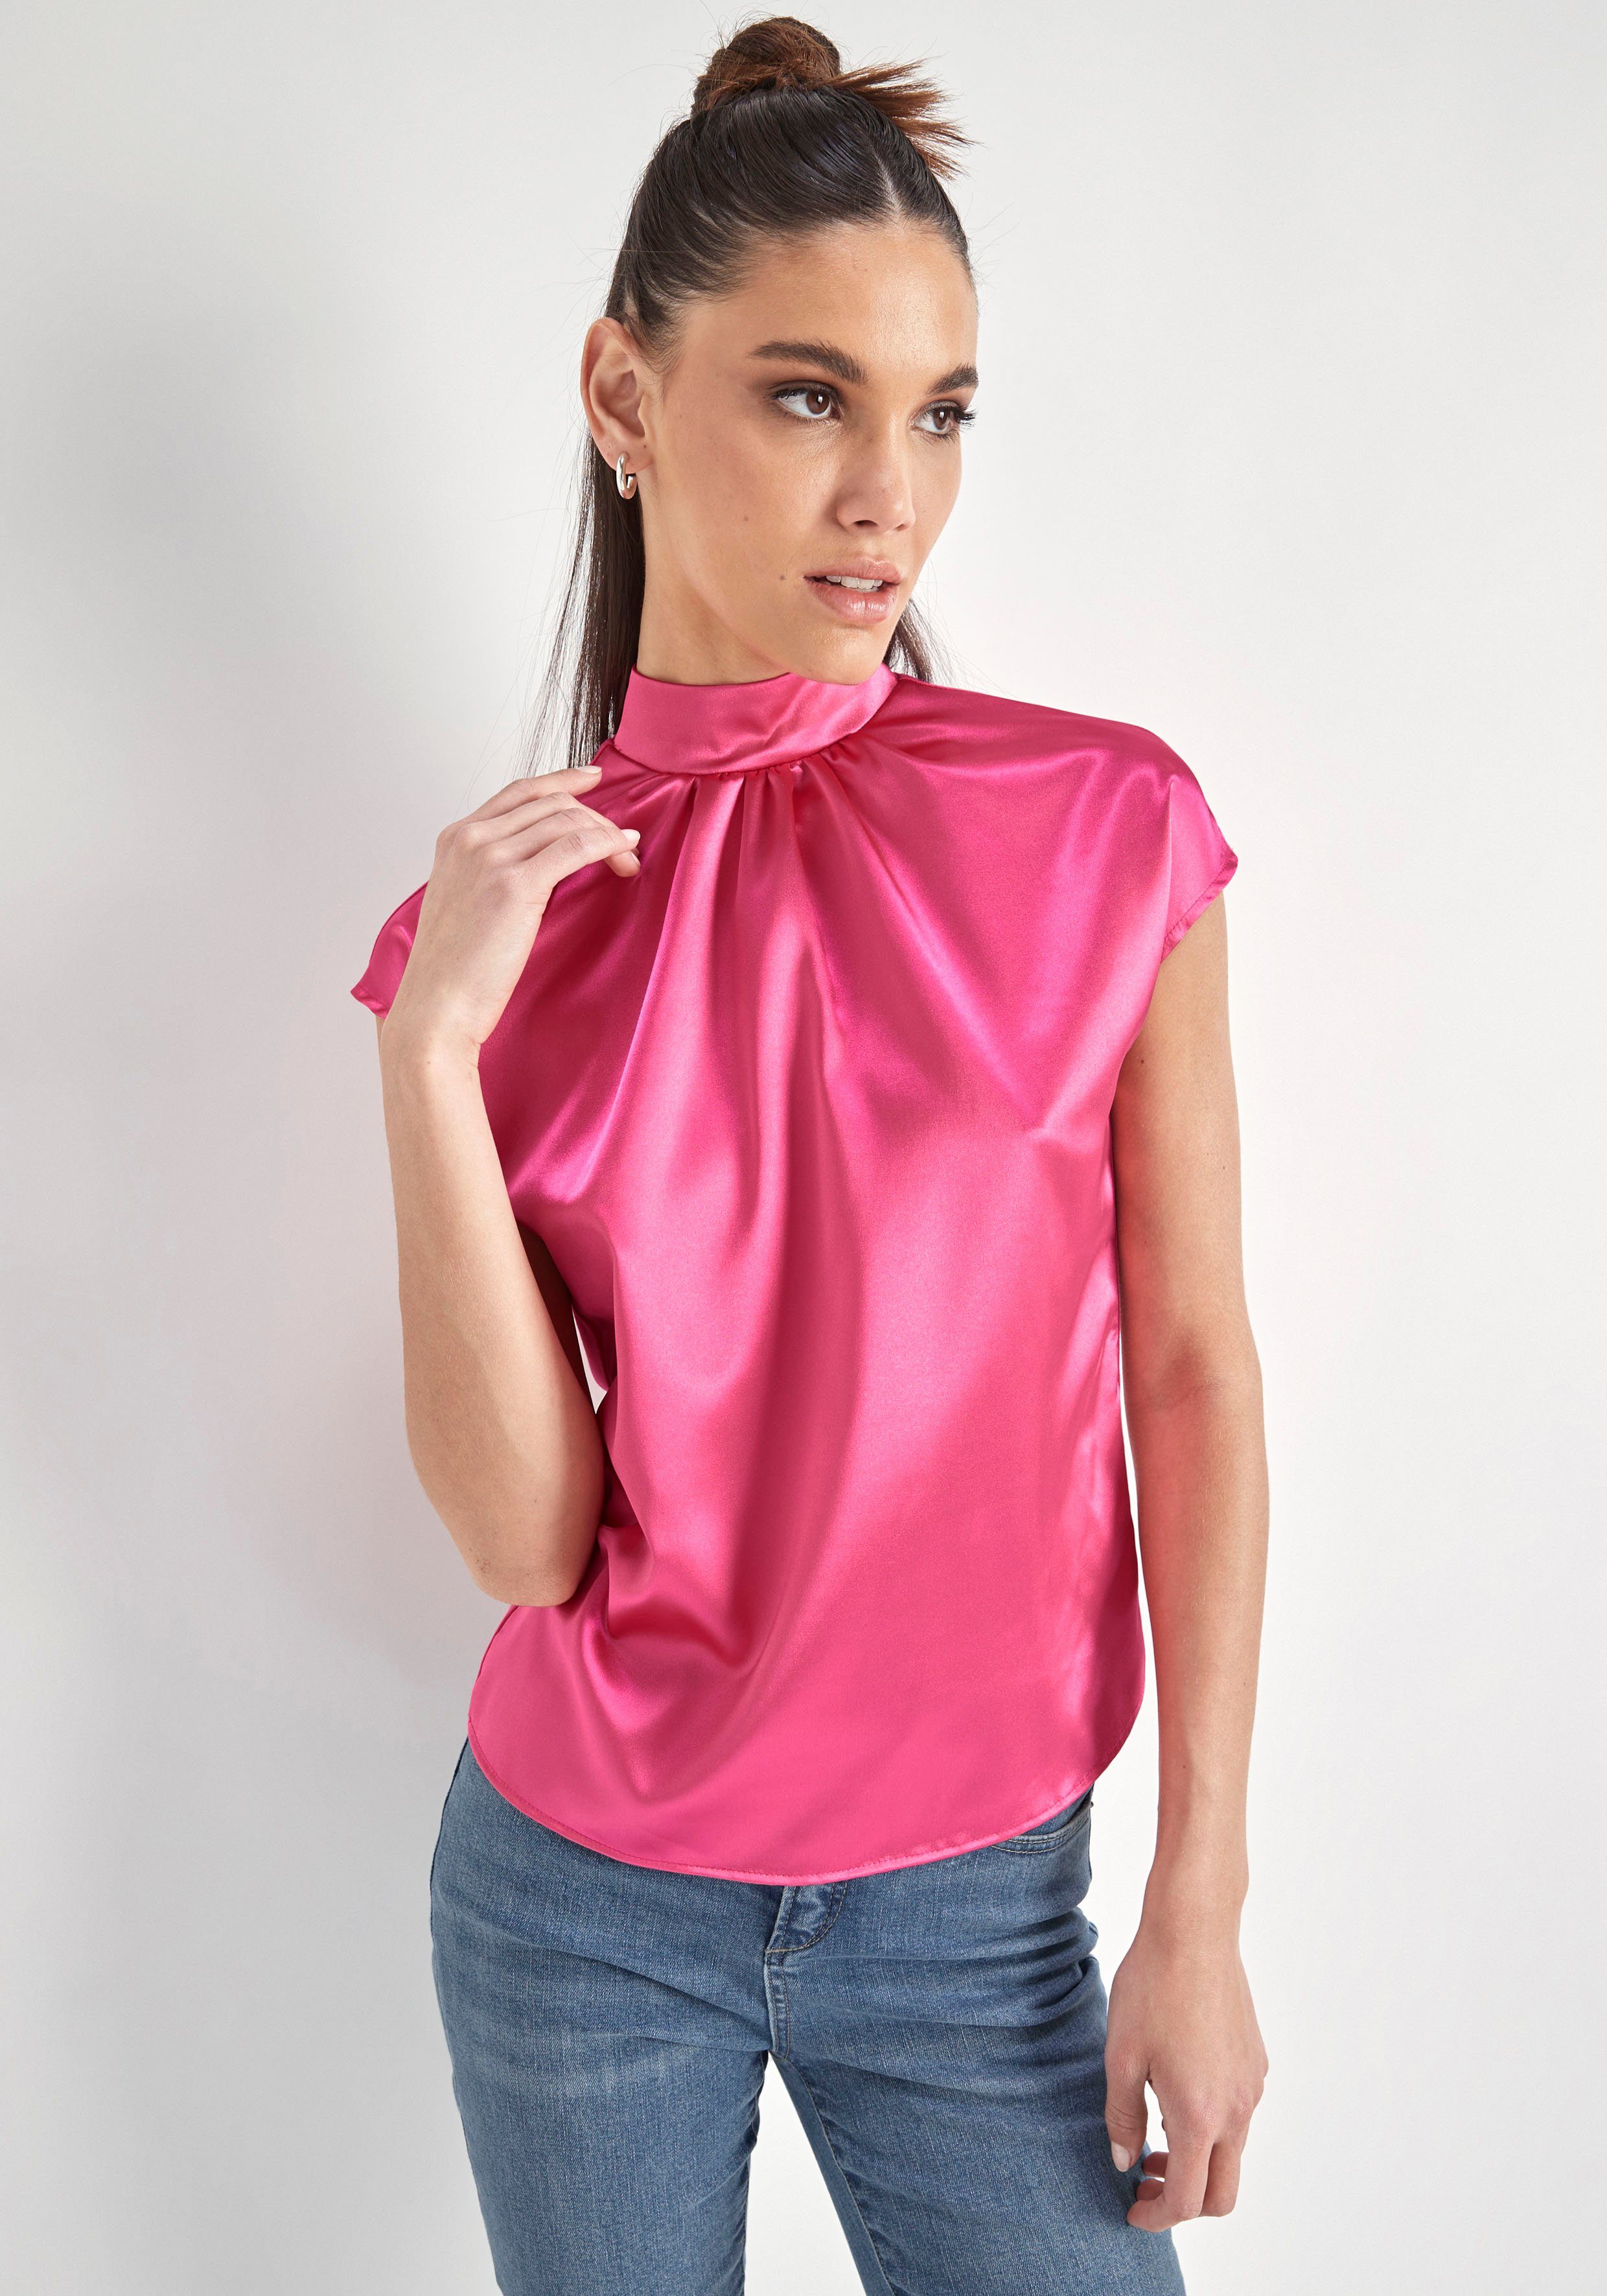 HECHTER PARIS Blusentop pink hochwertigem aus Material